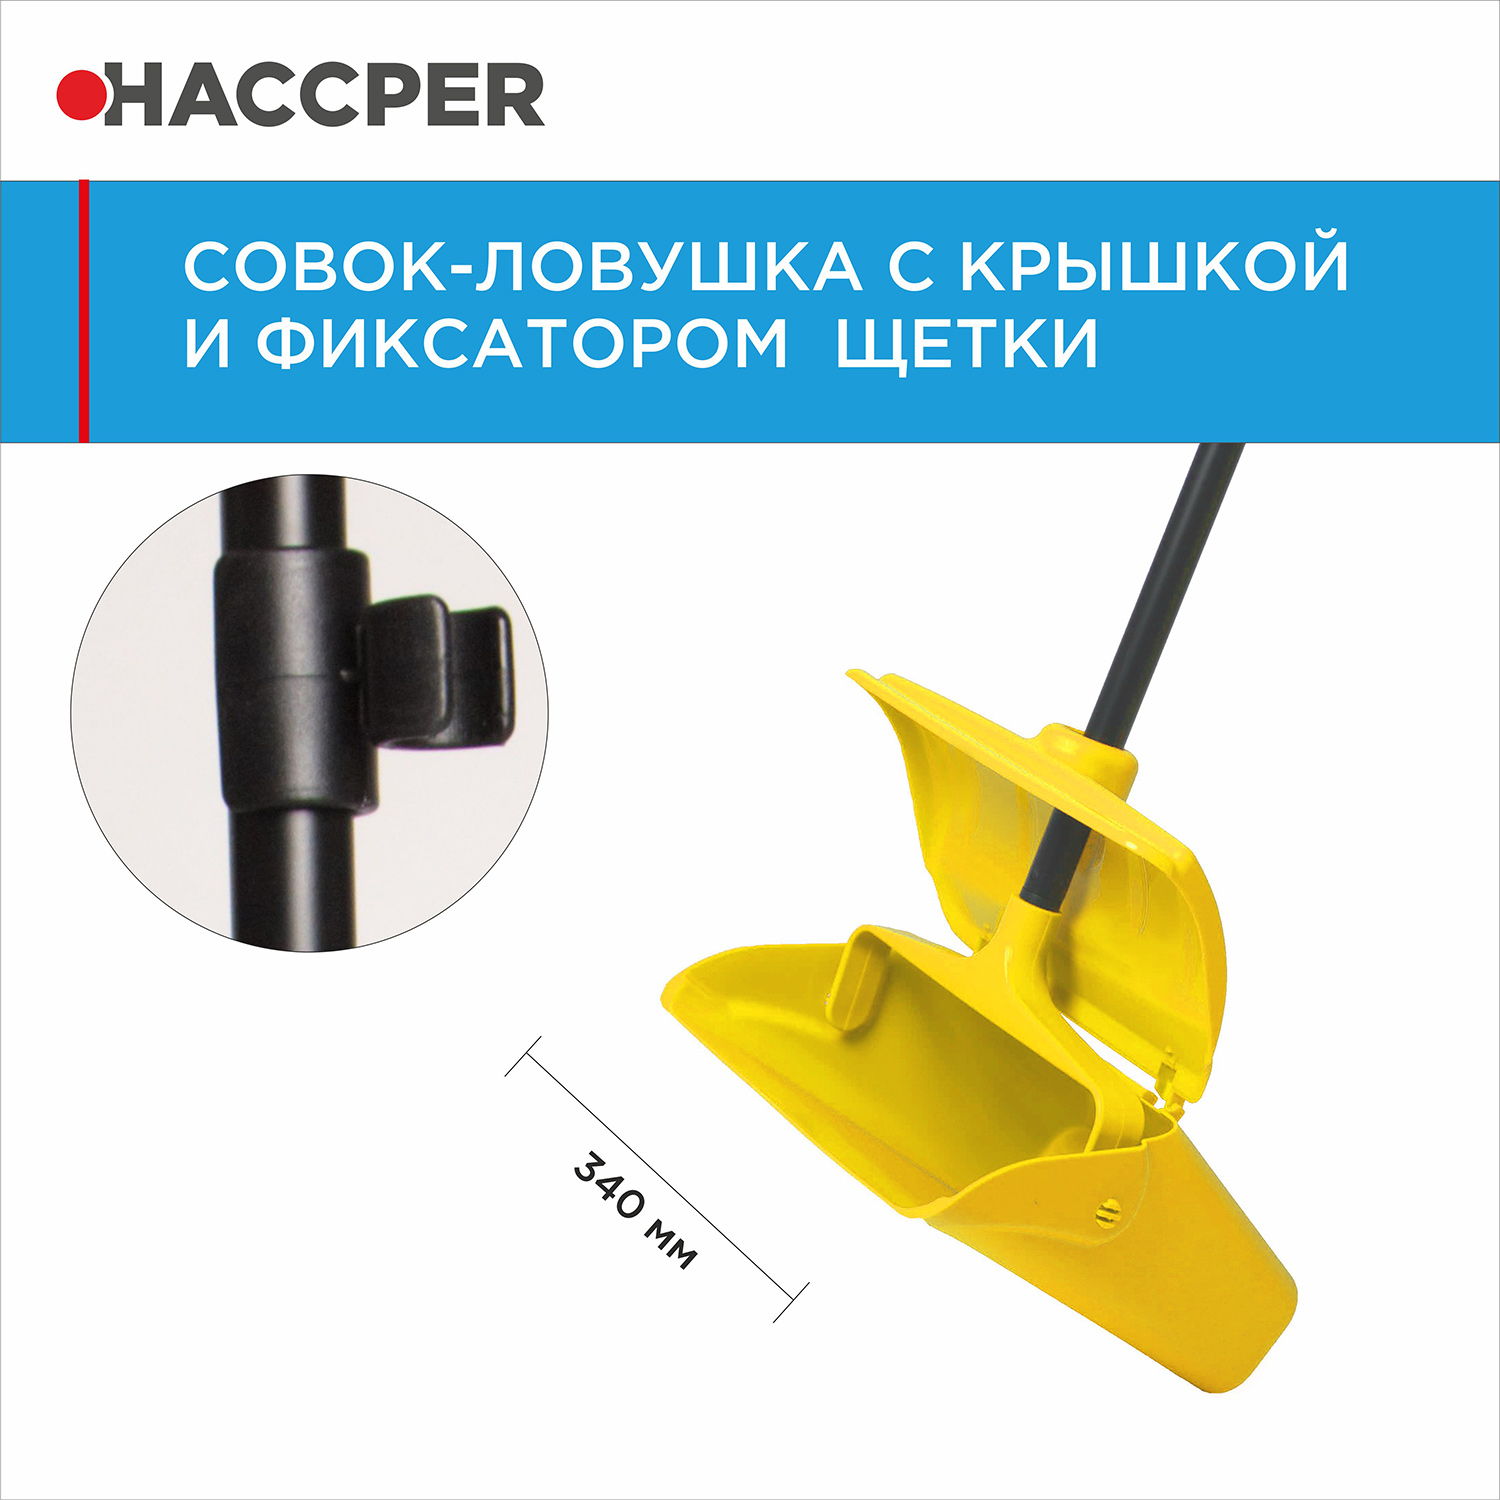 Совок-ловушка HACCPER с крышкой и фиксатором щетки, желтый